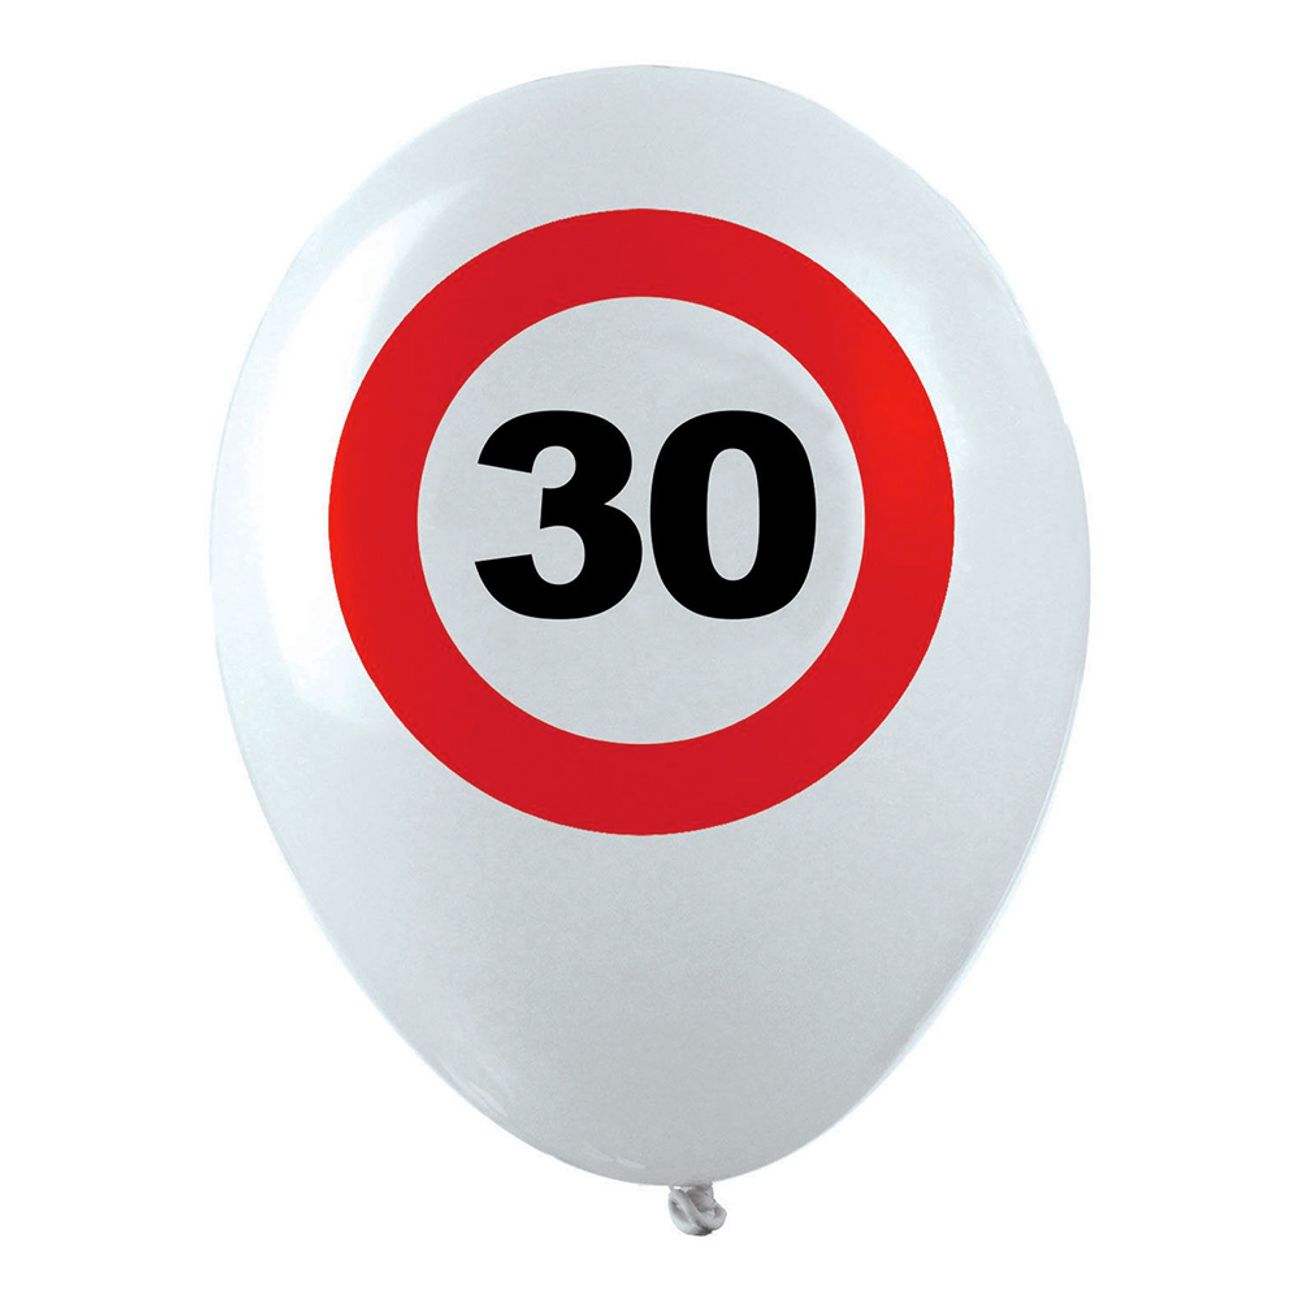 ballonger-trafikskylt-30-1